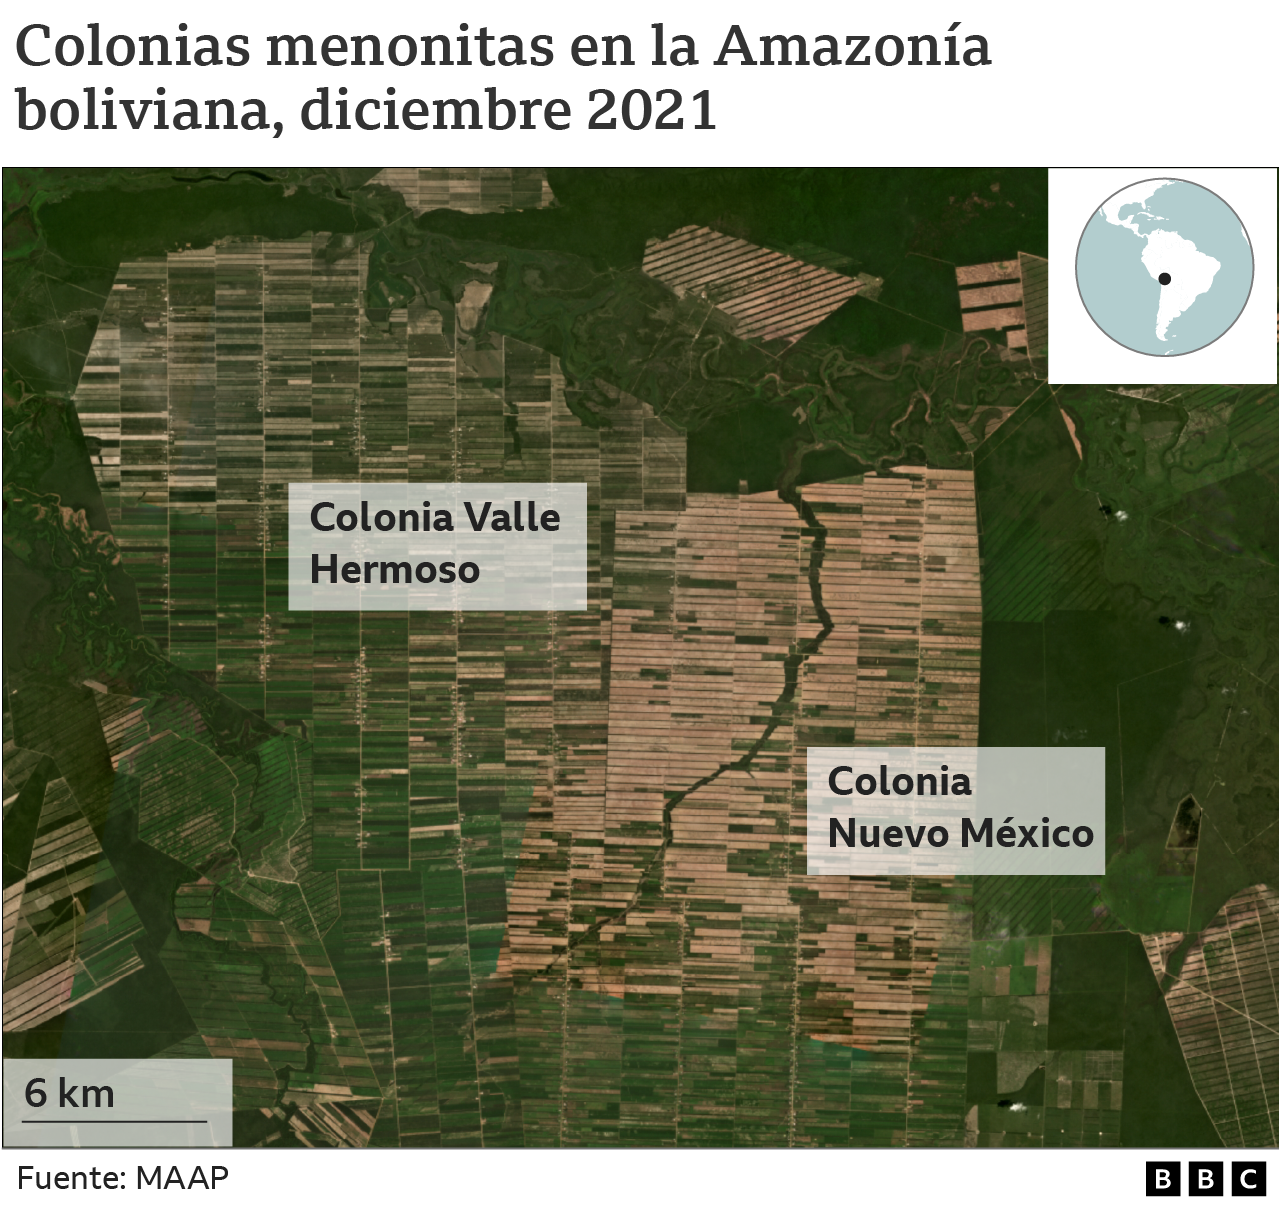 Vista satelital de las colonias Valle Hermoso y Nuevo México, Bolivia